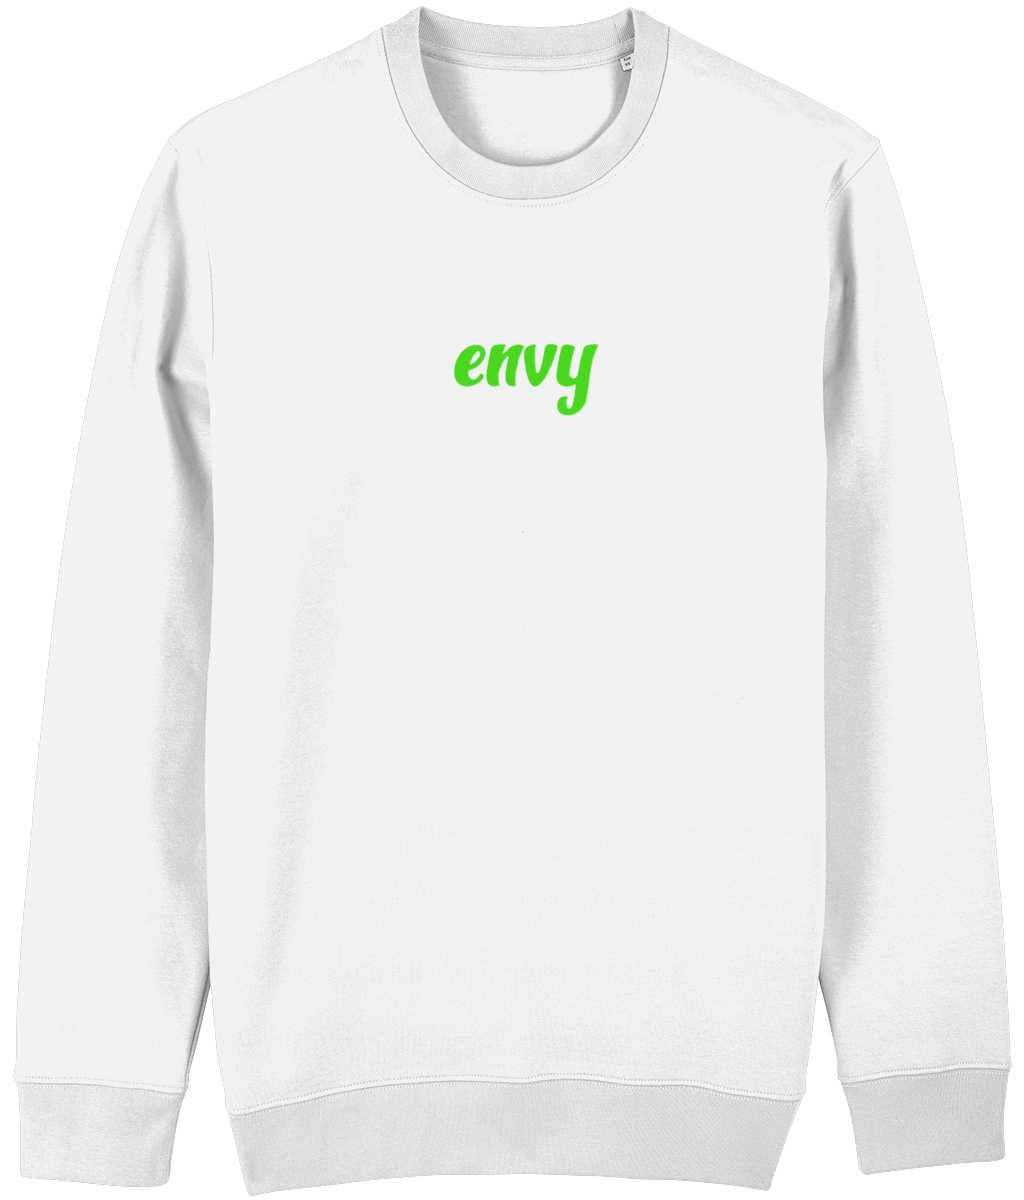 Envy non gender sweatshirt Cherchez La Femme brand